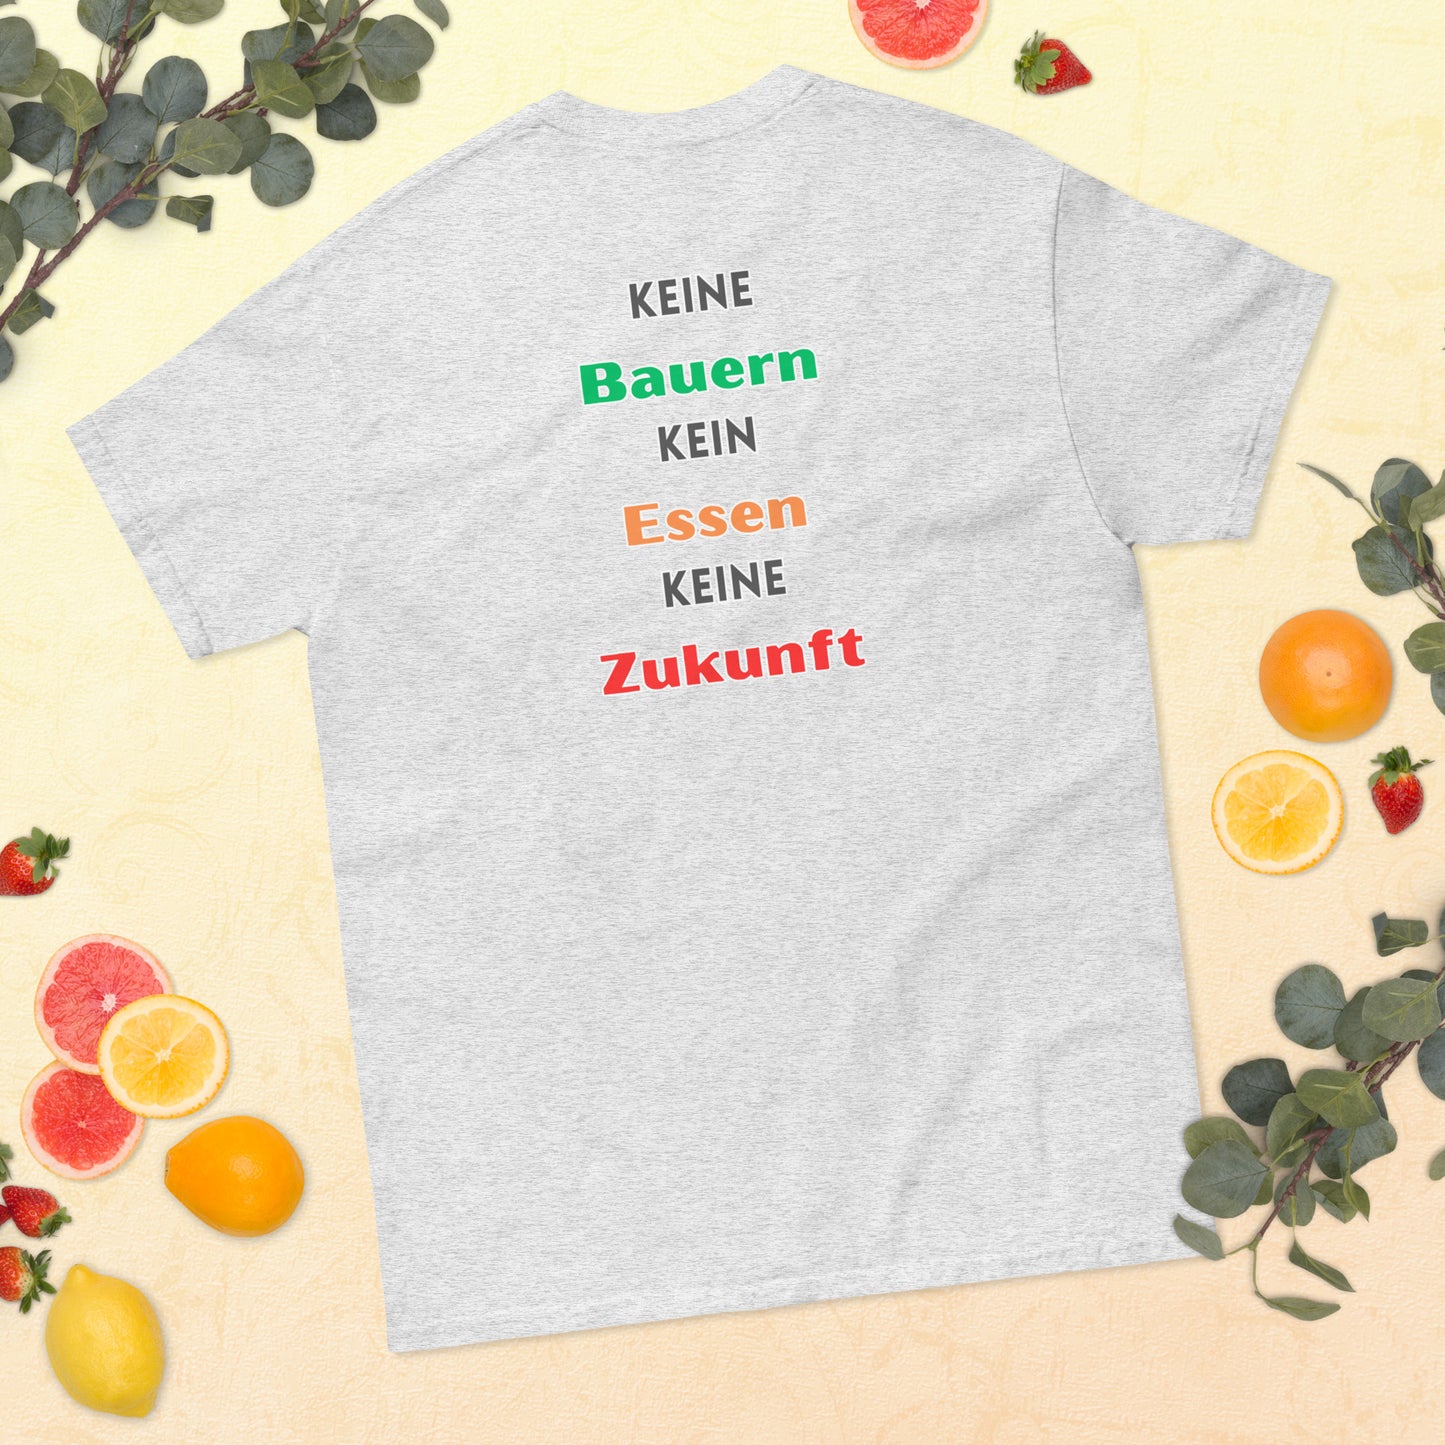 0-A-00 Keine Bauern Kein Essen Keine Zukunft Klassisches Herren-T-Shirt